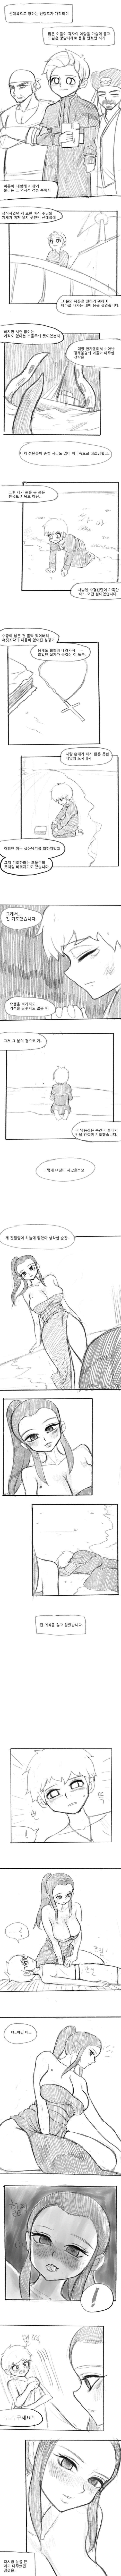 [19금?]여자밖에 안사는 섬에 조난당한 선교사 만화.manhwa